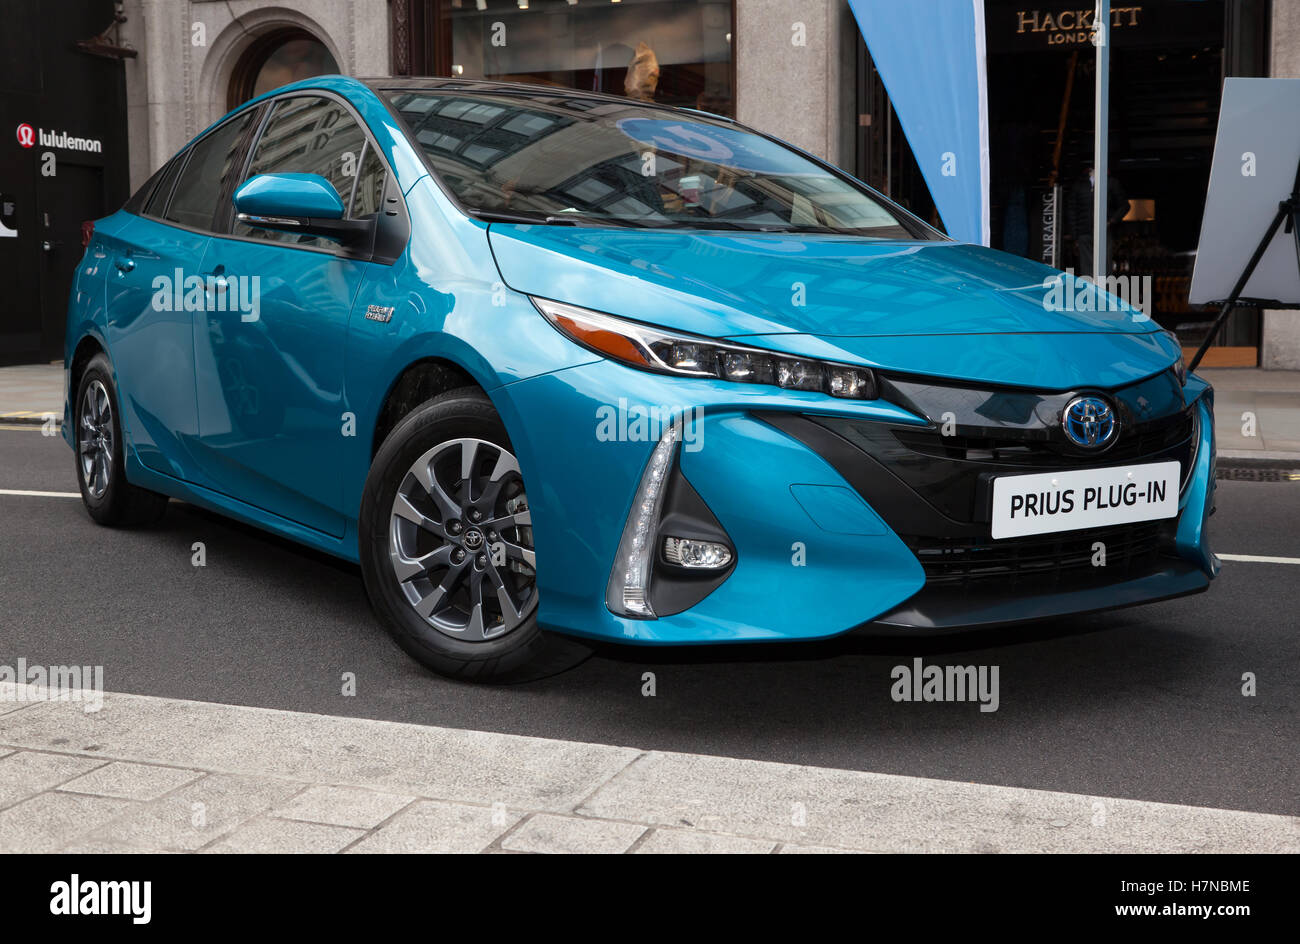 2017 Le Premier Toyota Prius hybride plug-in sur l'affichage dans l'automobile Zone de faibles émissions, de l'automobile de Regents Street 2016 Banque D'Images